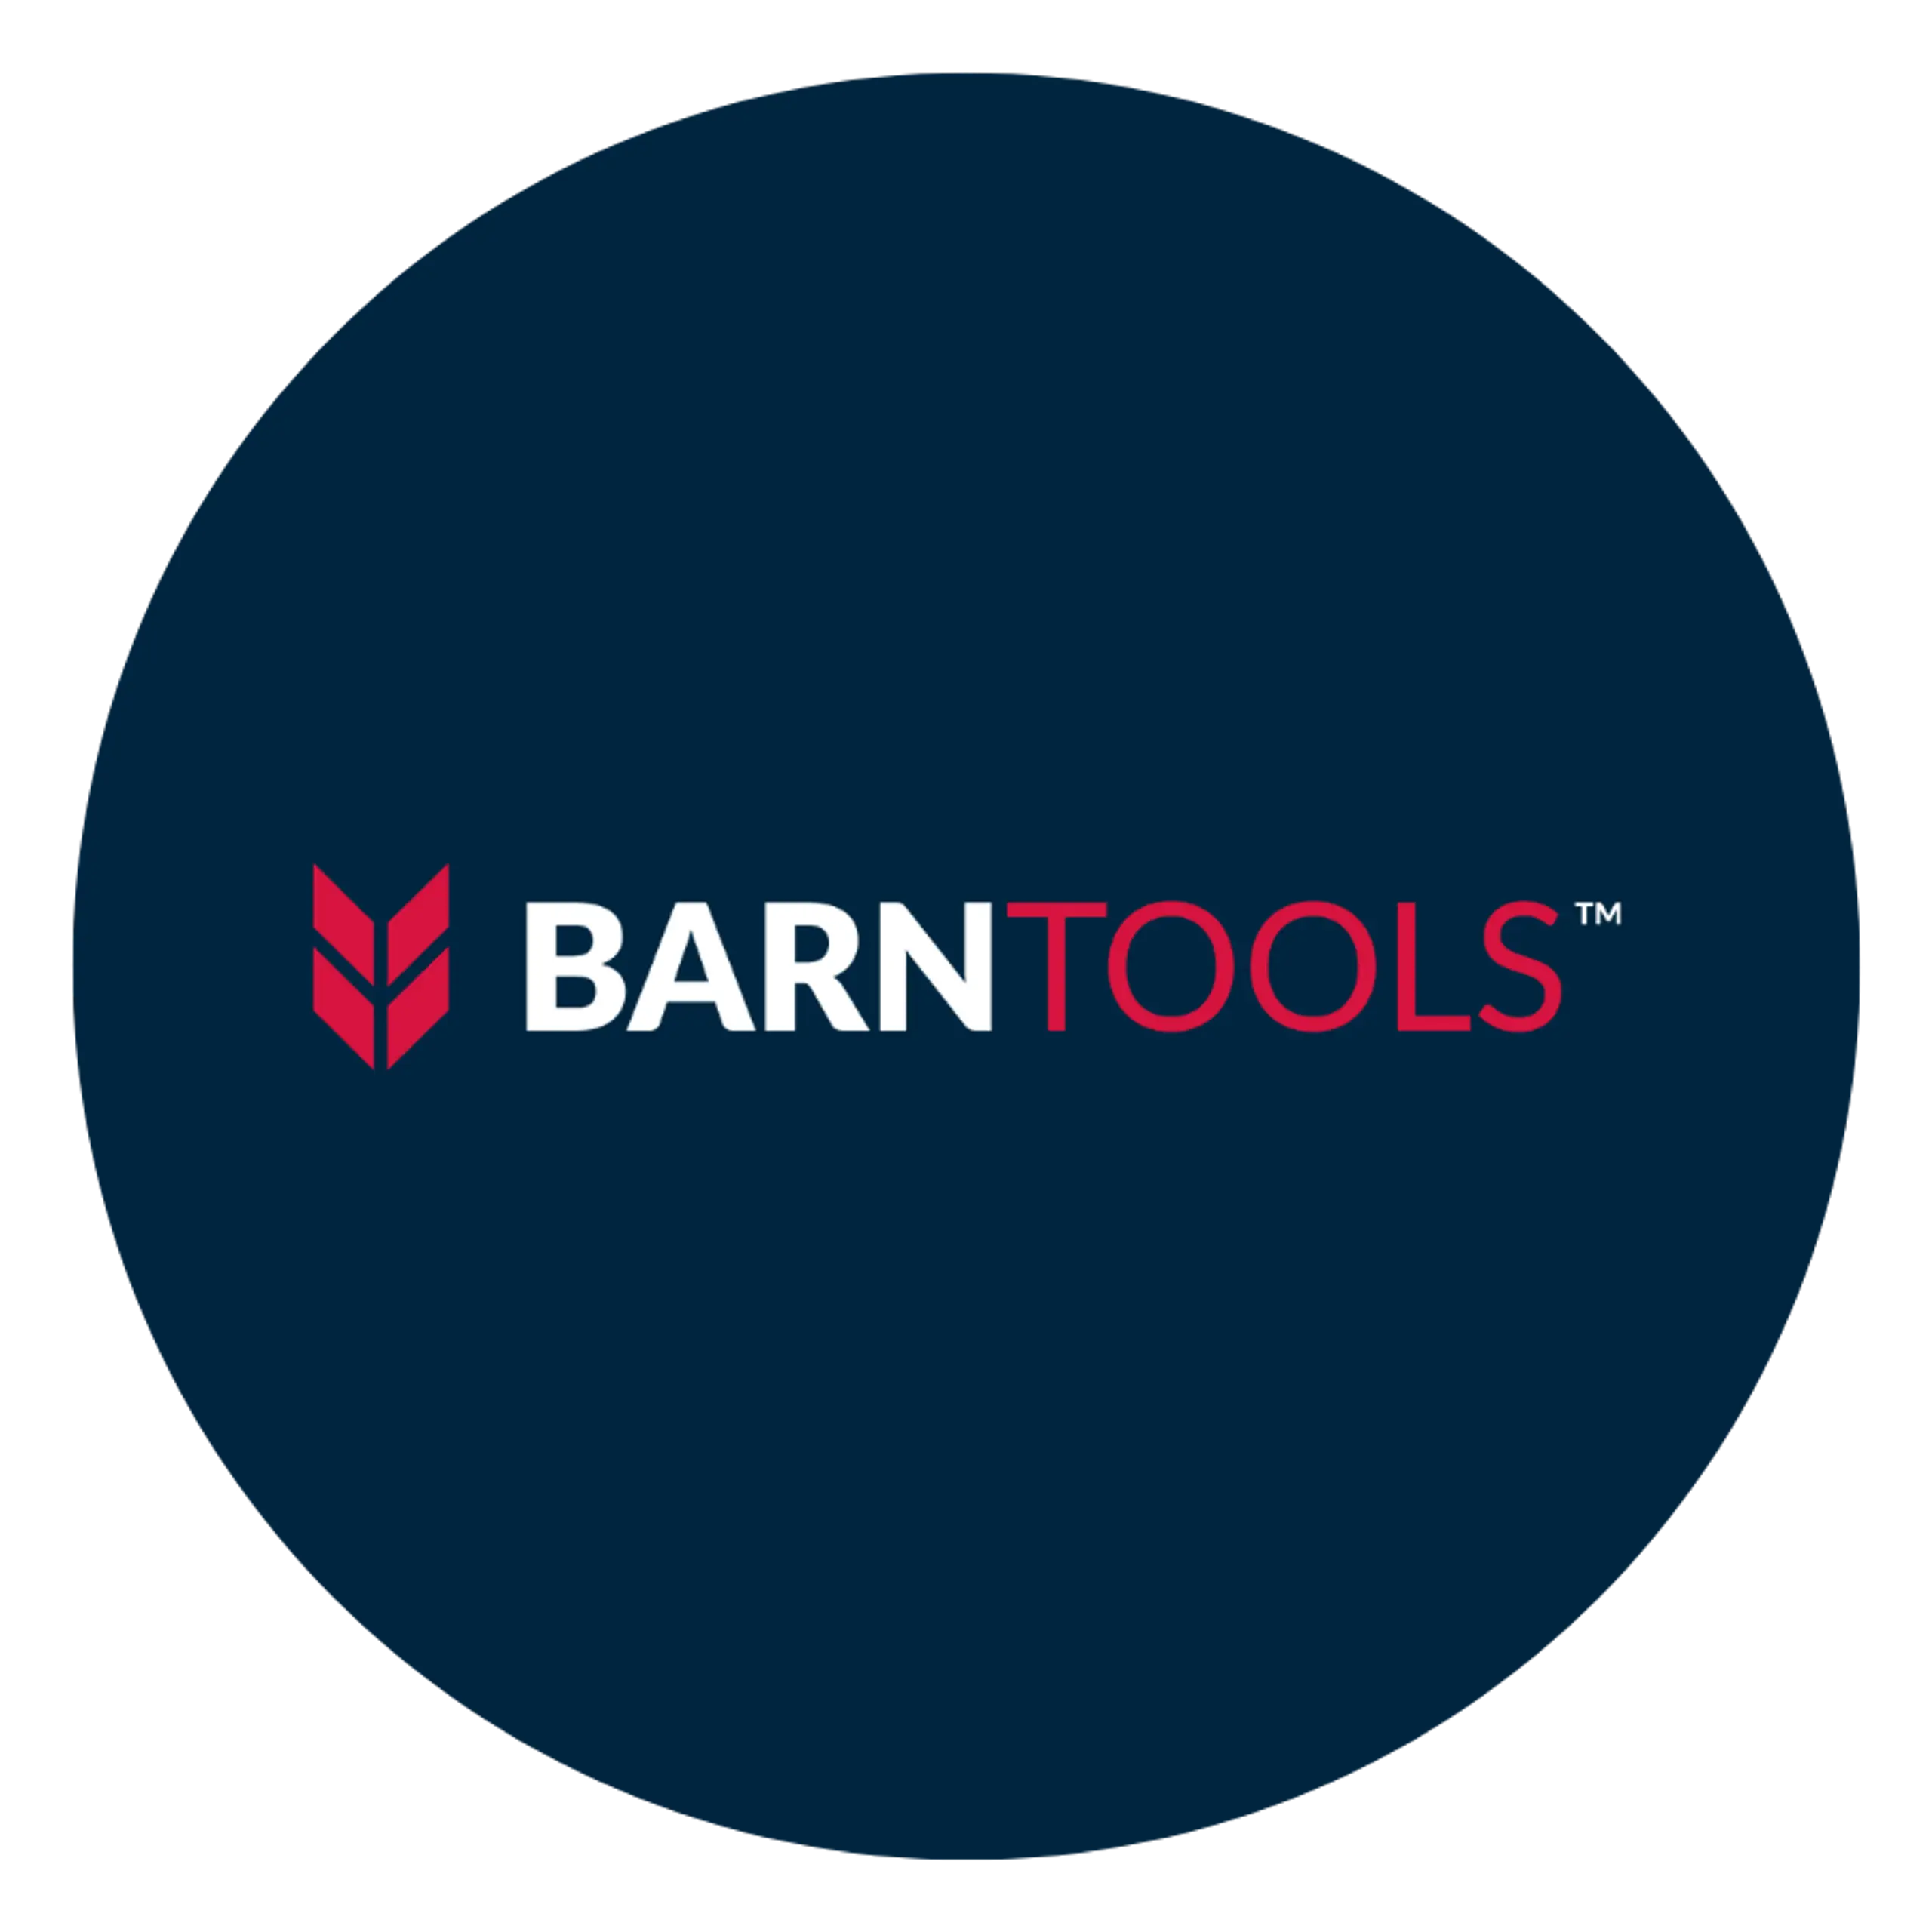 BarnTools logo in circle